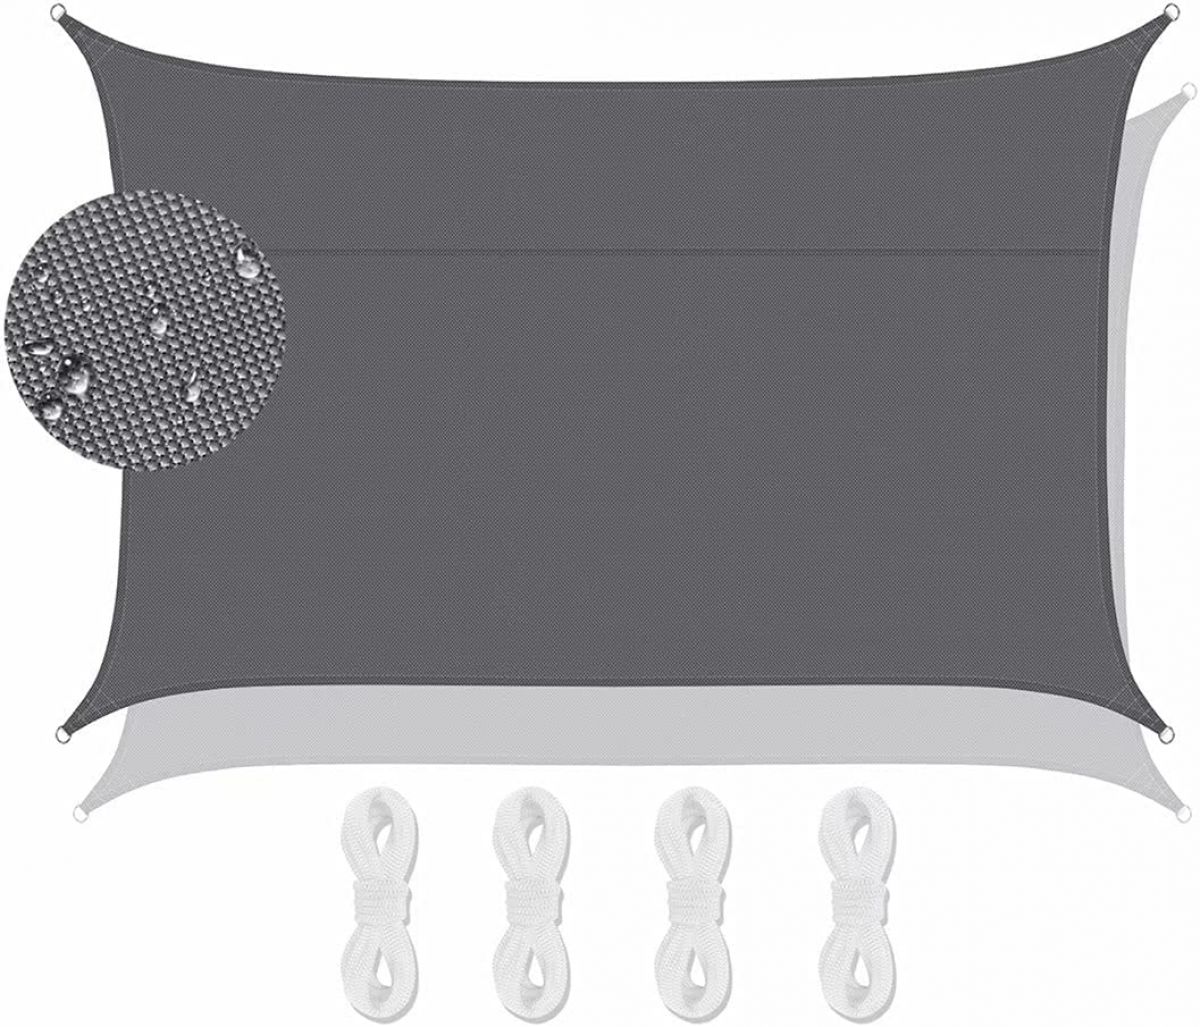 Водонепроницаемый солнцезащитный козырек Lanbent 4×4 м, серый